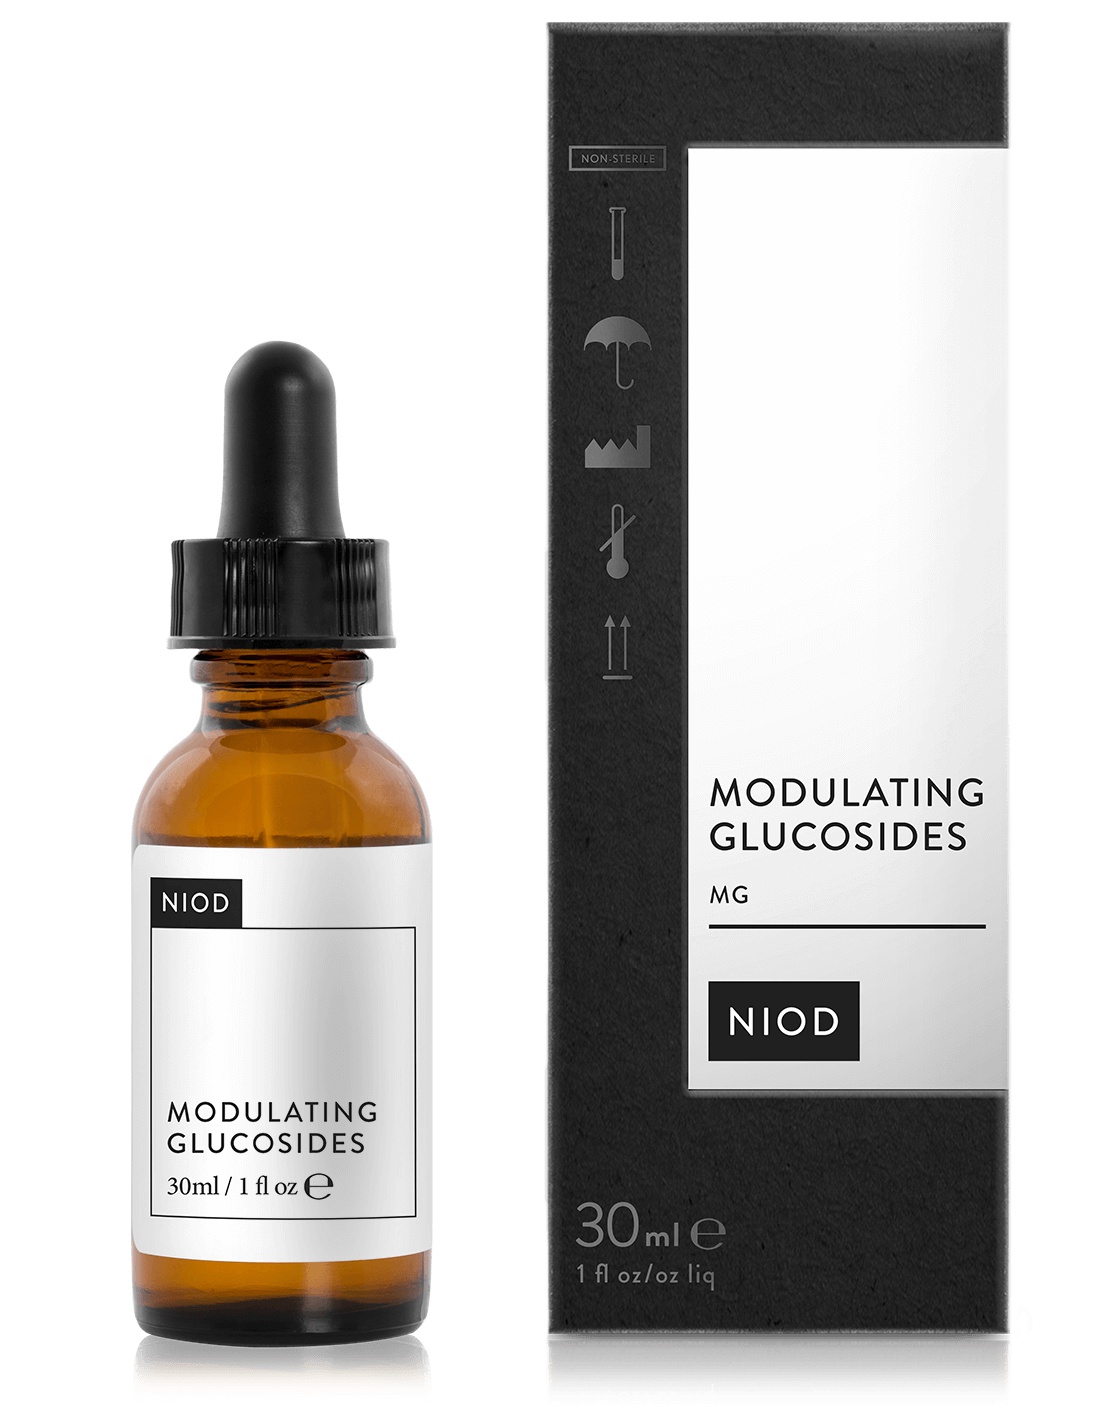 NIOD Modulating Glucosides